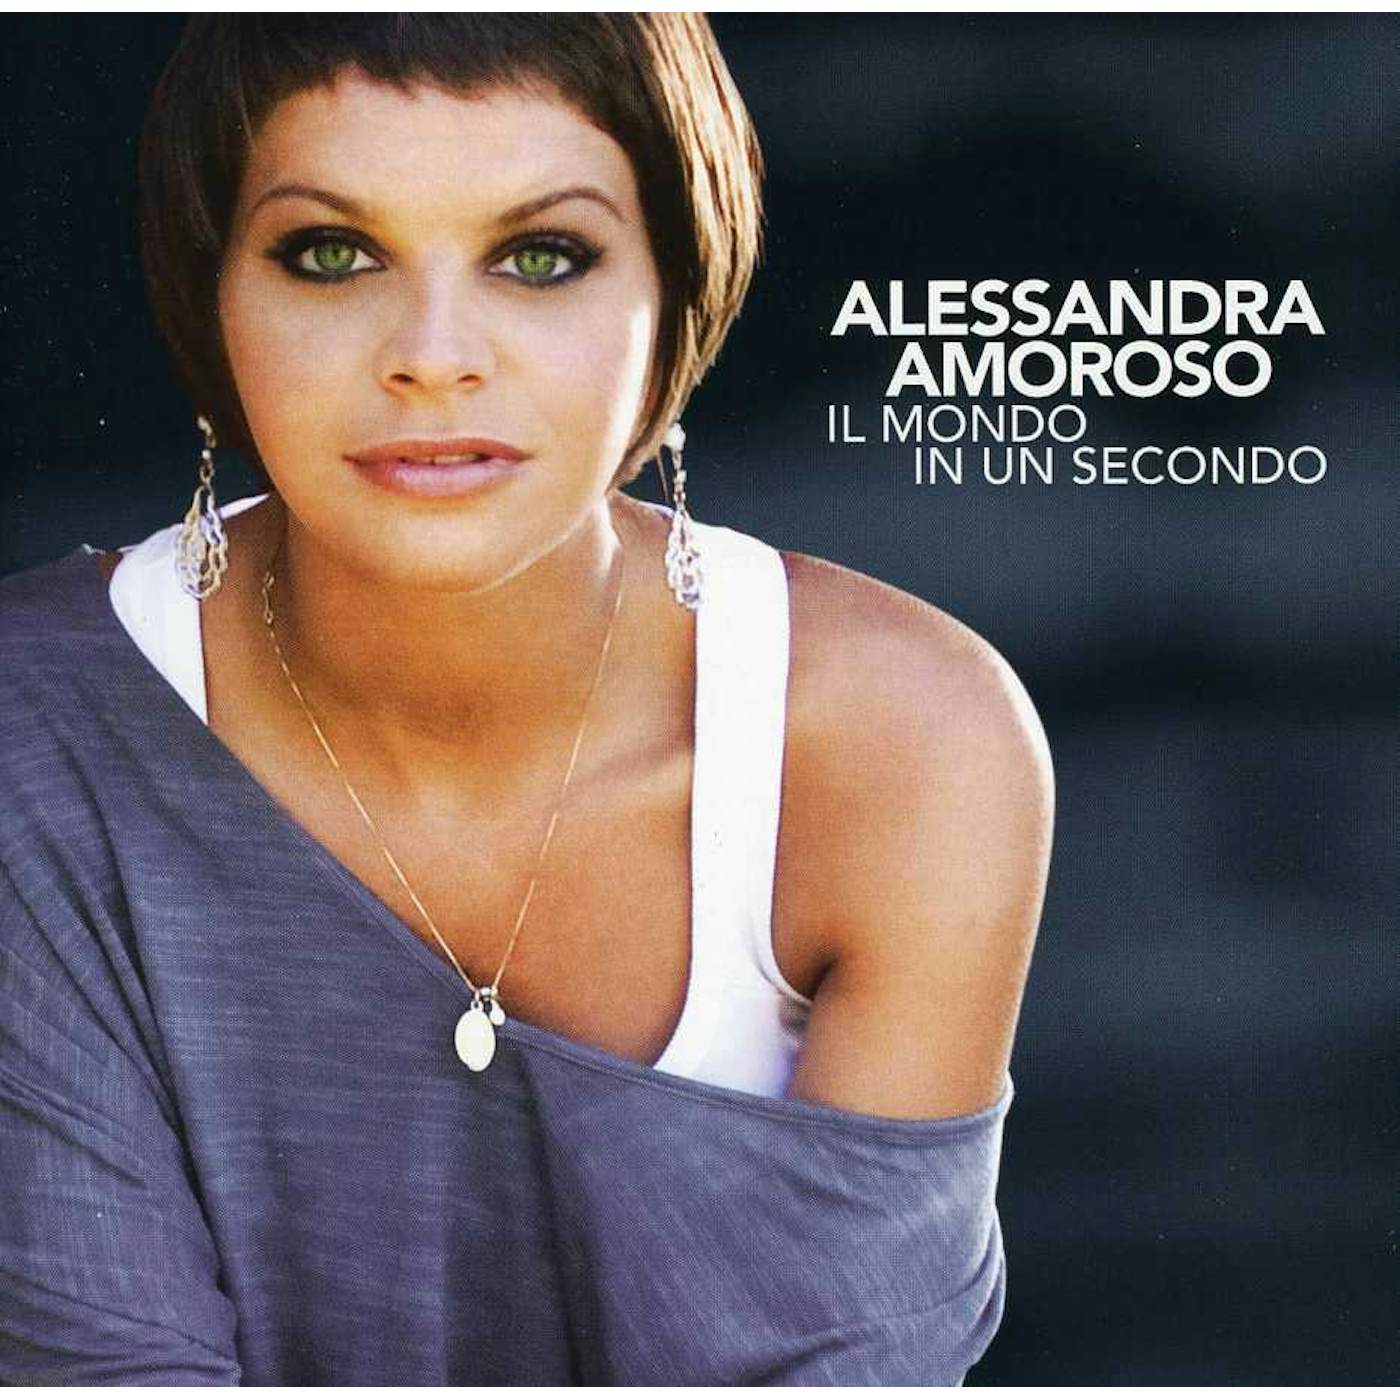 Alessandra Amoroso IL MONDO IN UN SECONDO CD